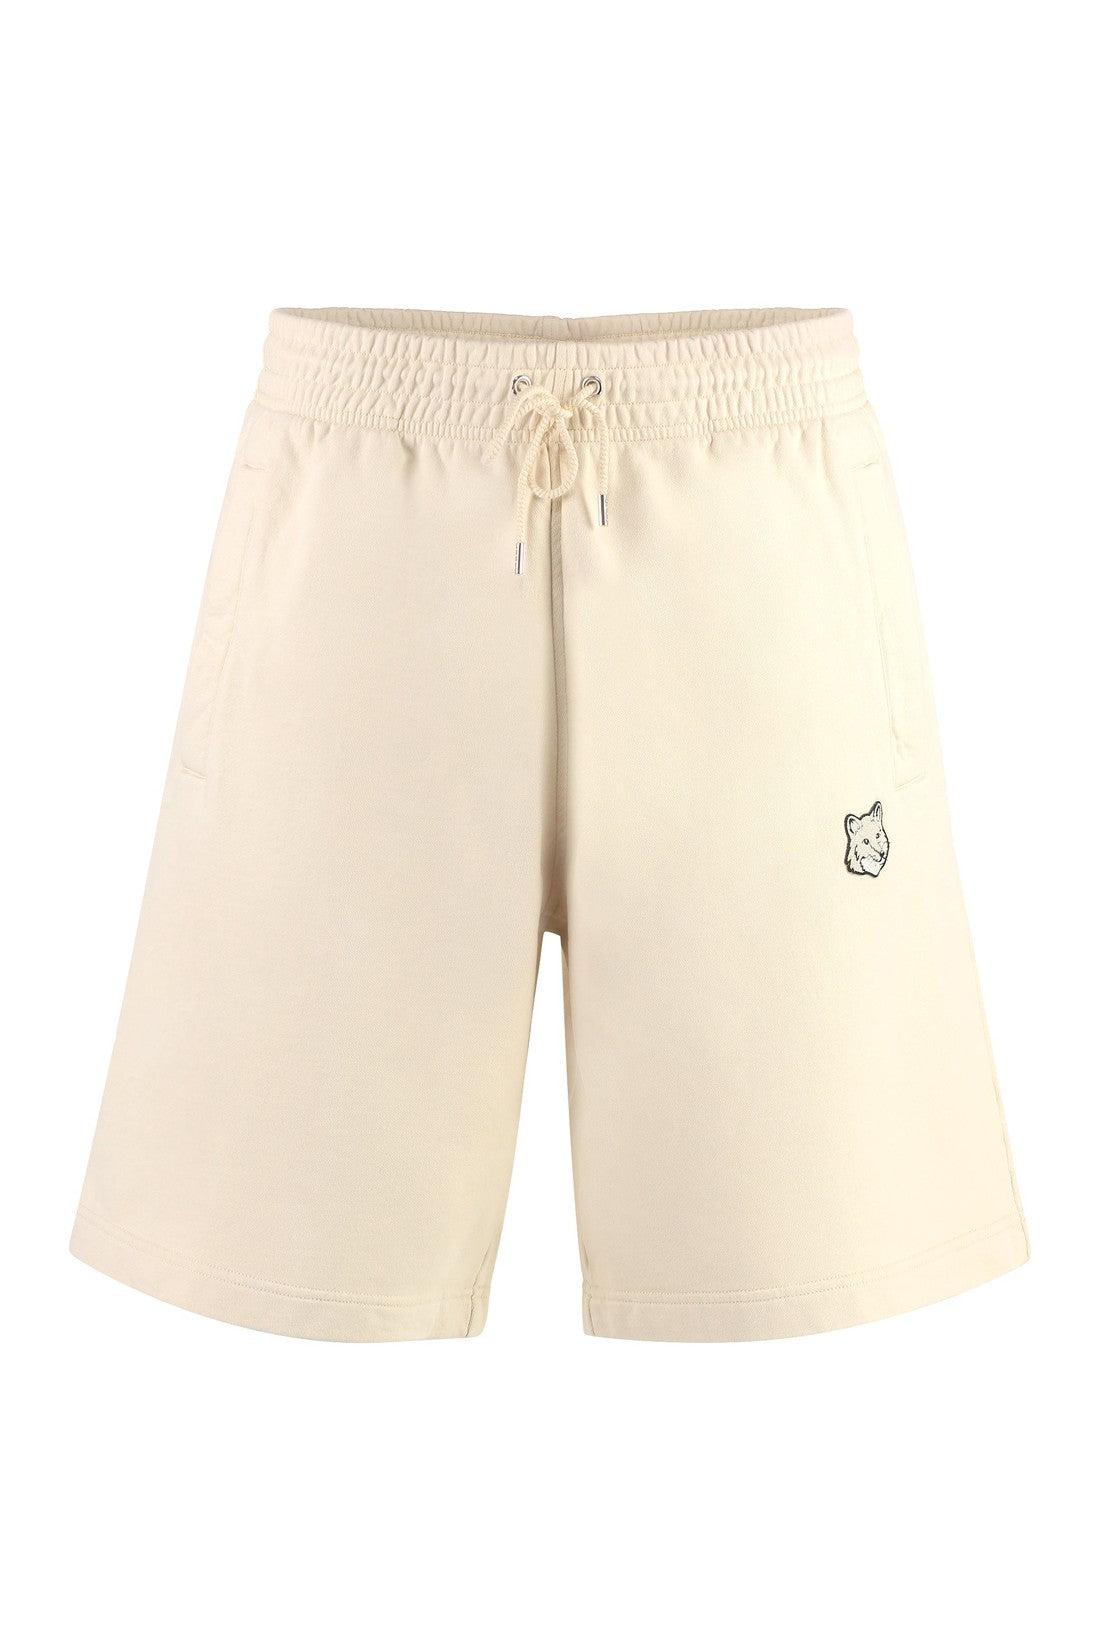 Maison Kitsuné-OUTLET-SALE-Cotton bermuda shorts-ARCHIVIST